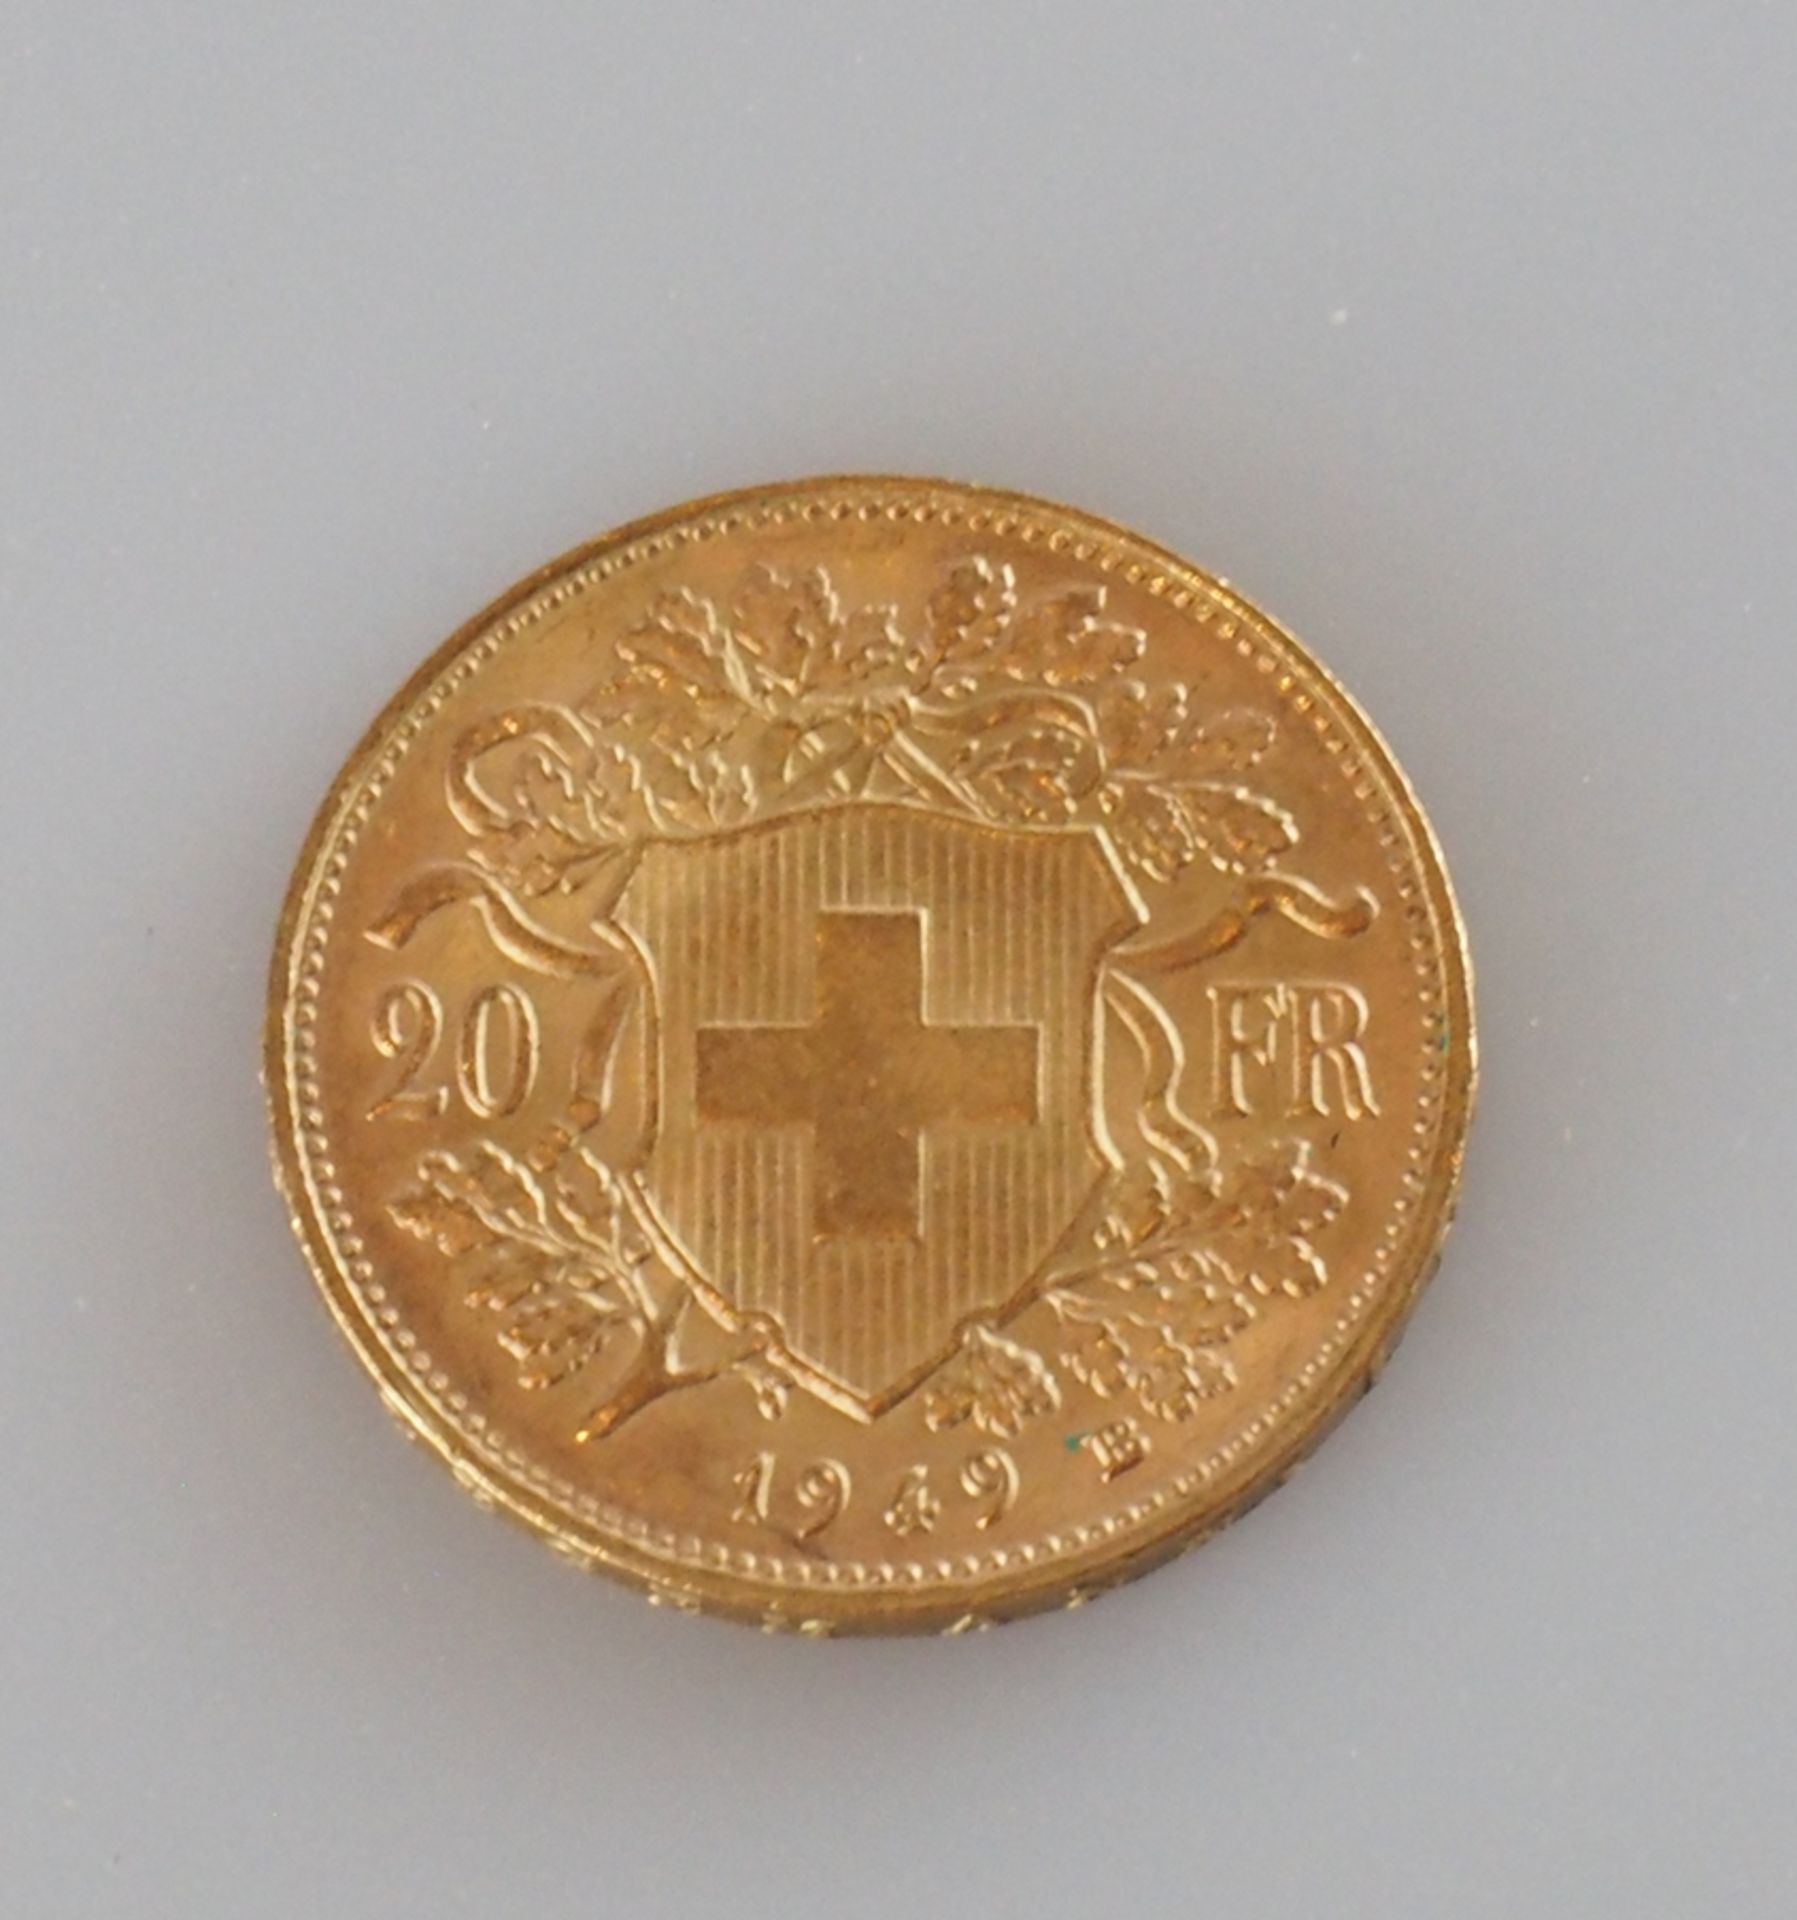 Goldmünze Schweiz. 20 Franken 1949 B - Bild 2 aus 2